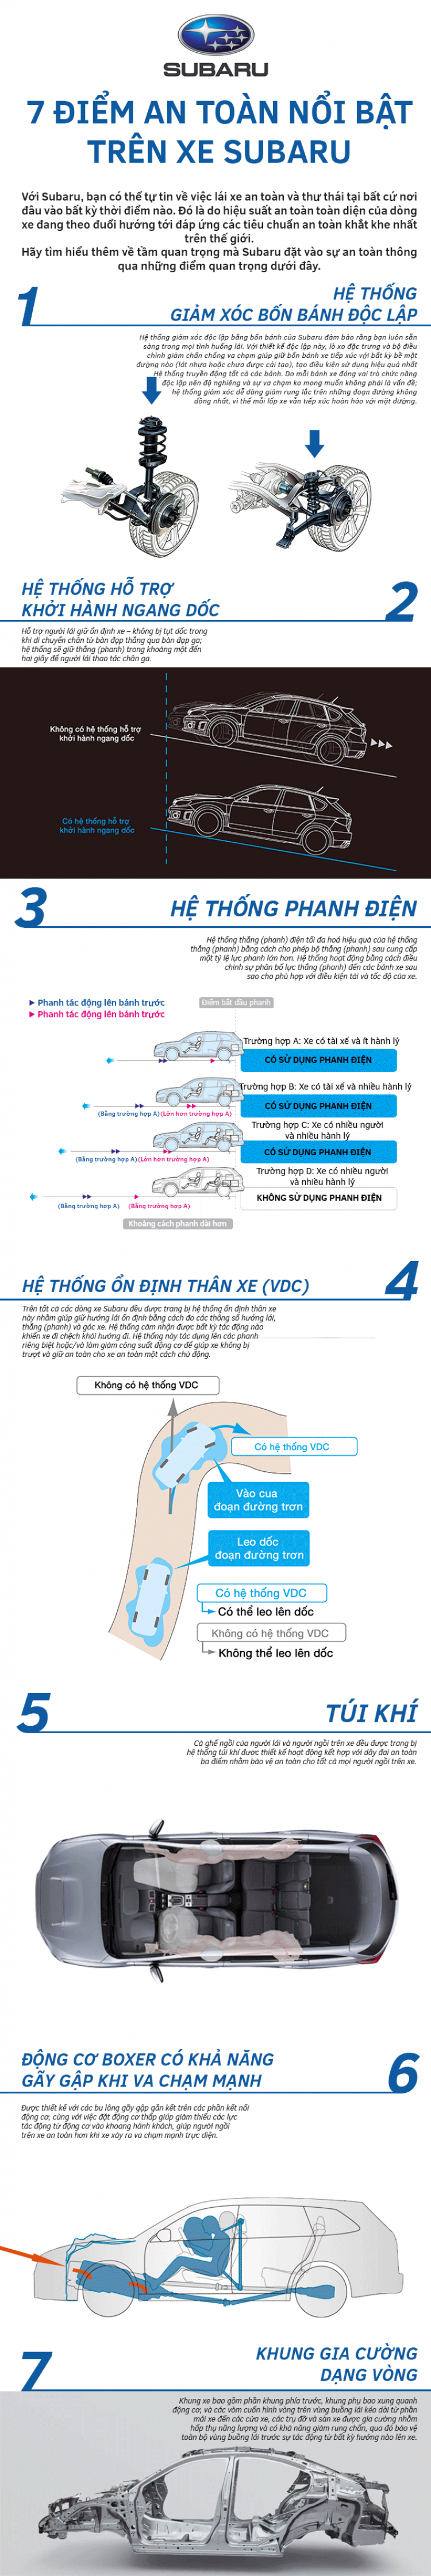 [QC] 7 điểm an toàn nổi bật trên xe Subaru